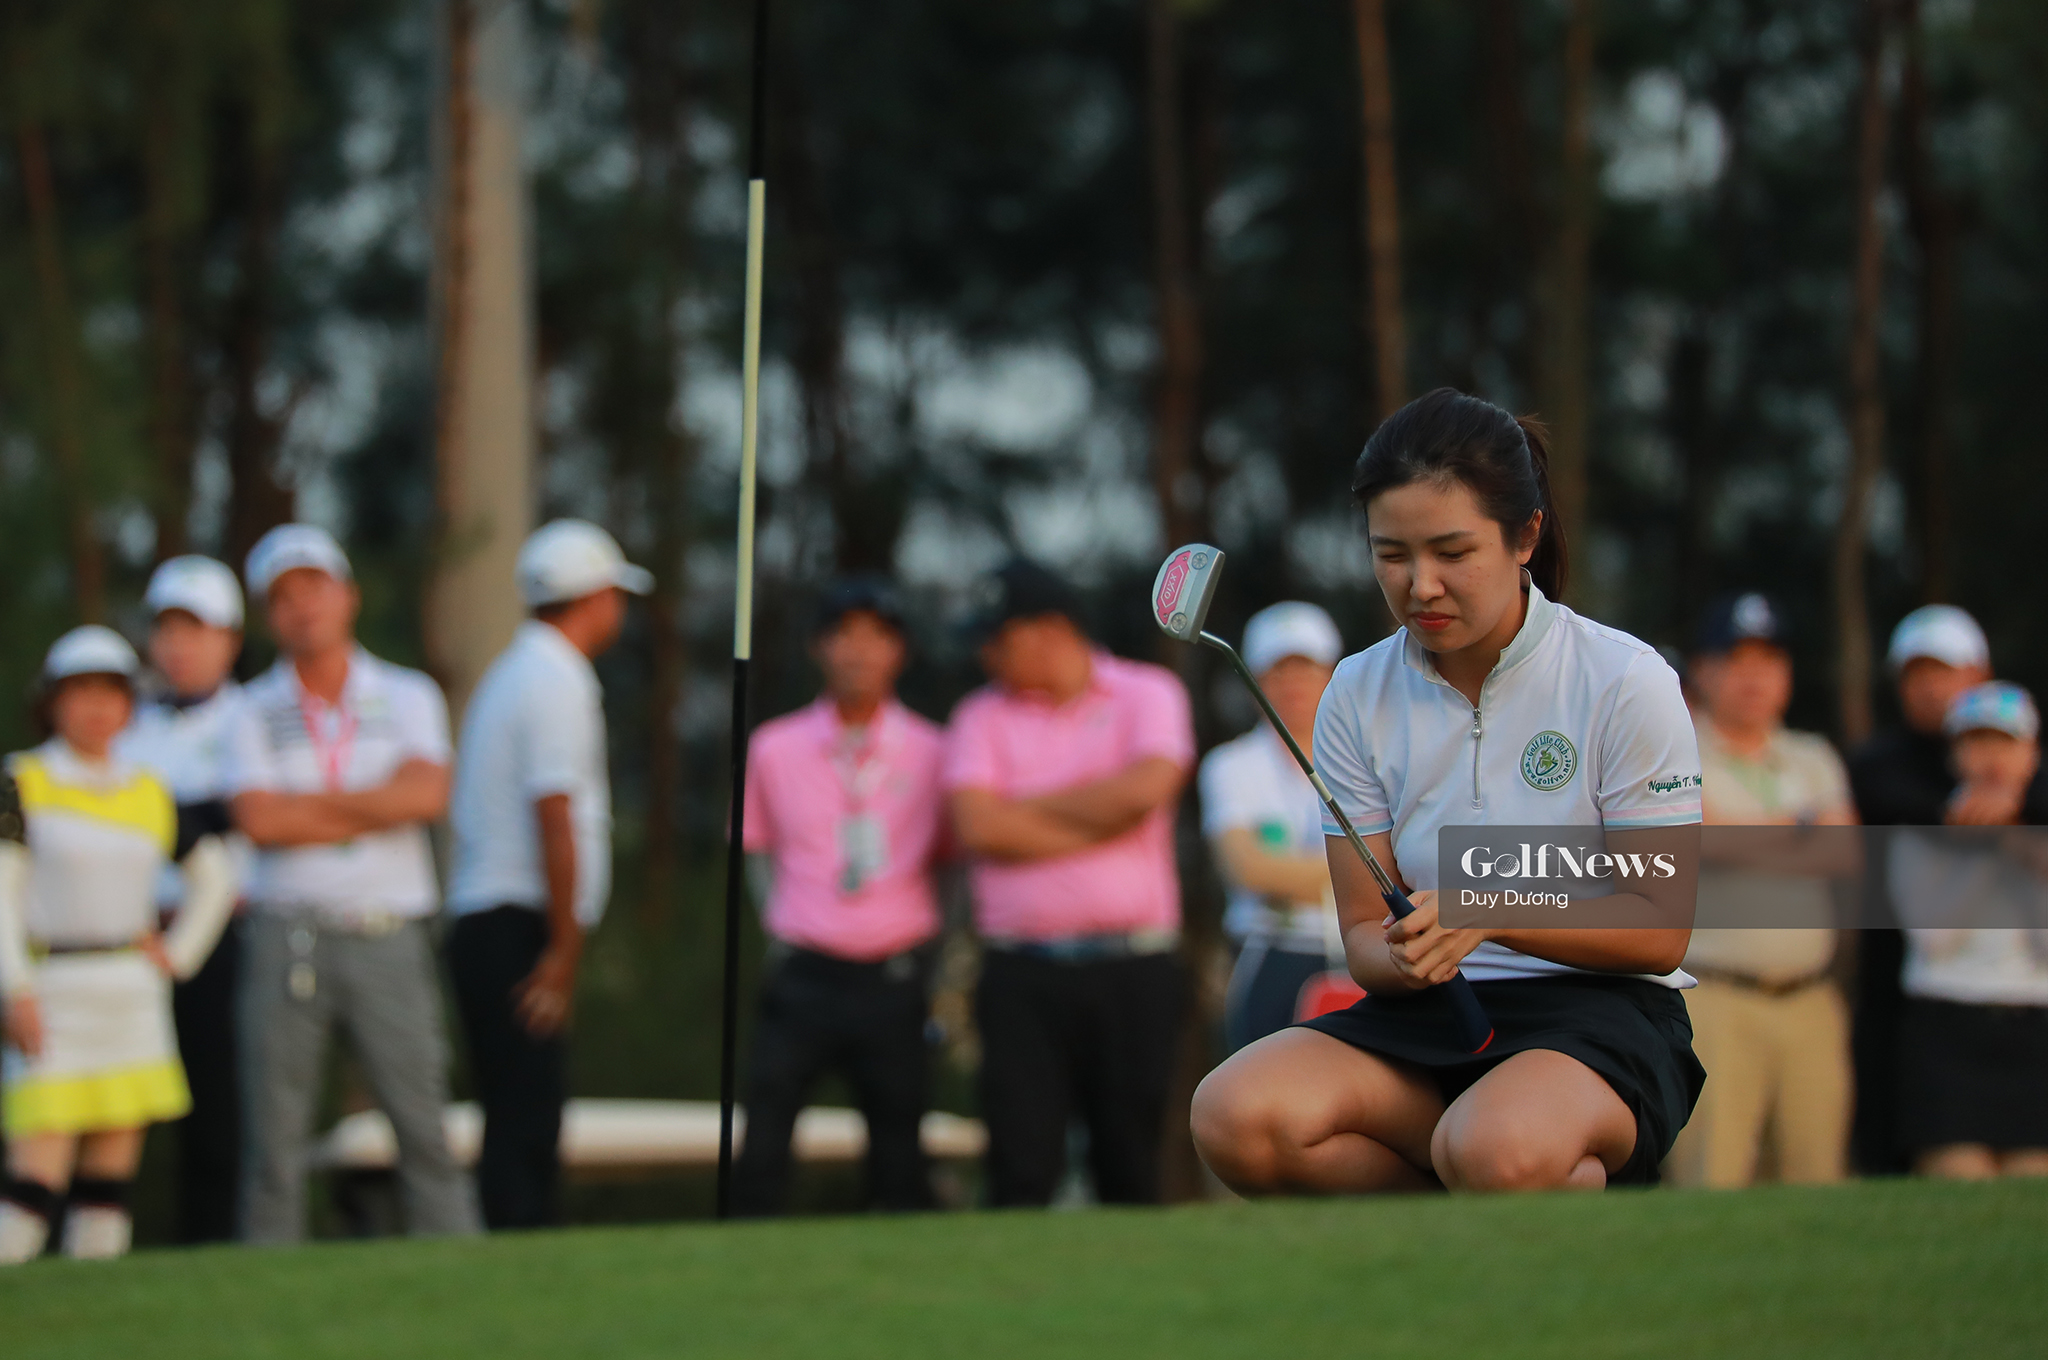 VCC 2020: Nguyễn Thị Hồng Lê mang tấm vé vào chung kết cho tuyển Nữ Golf Life Club